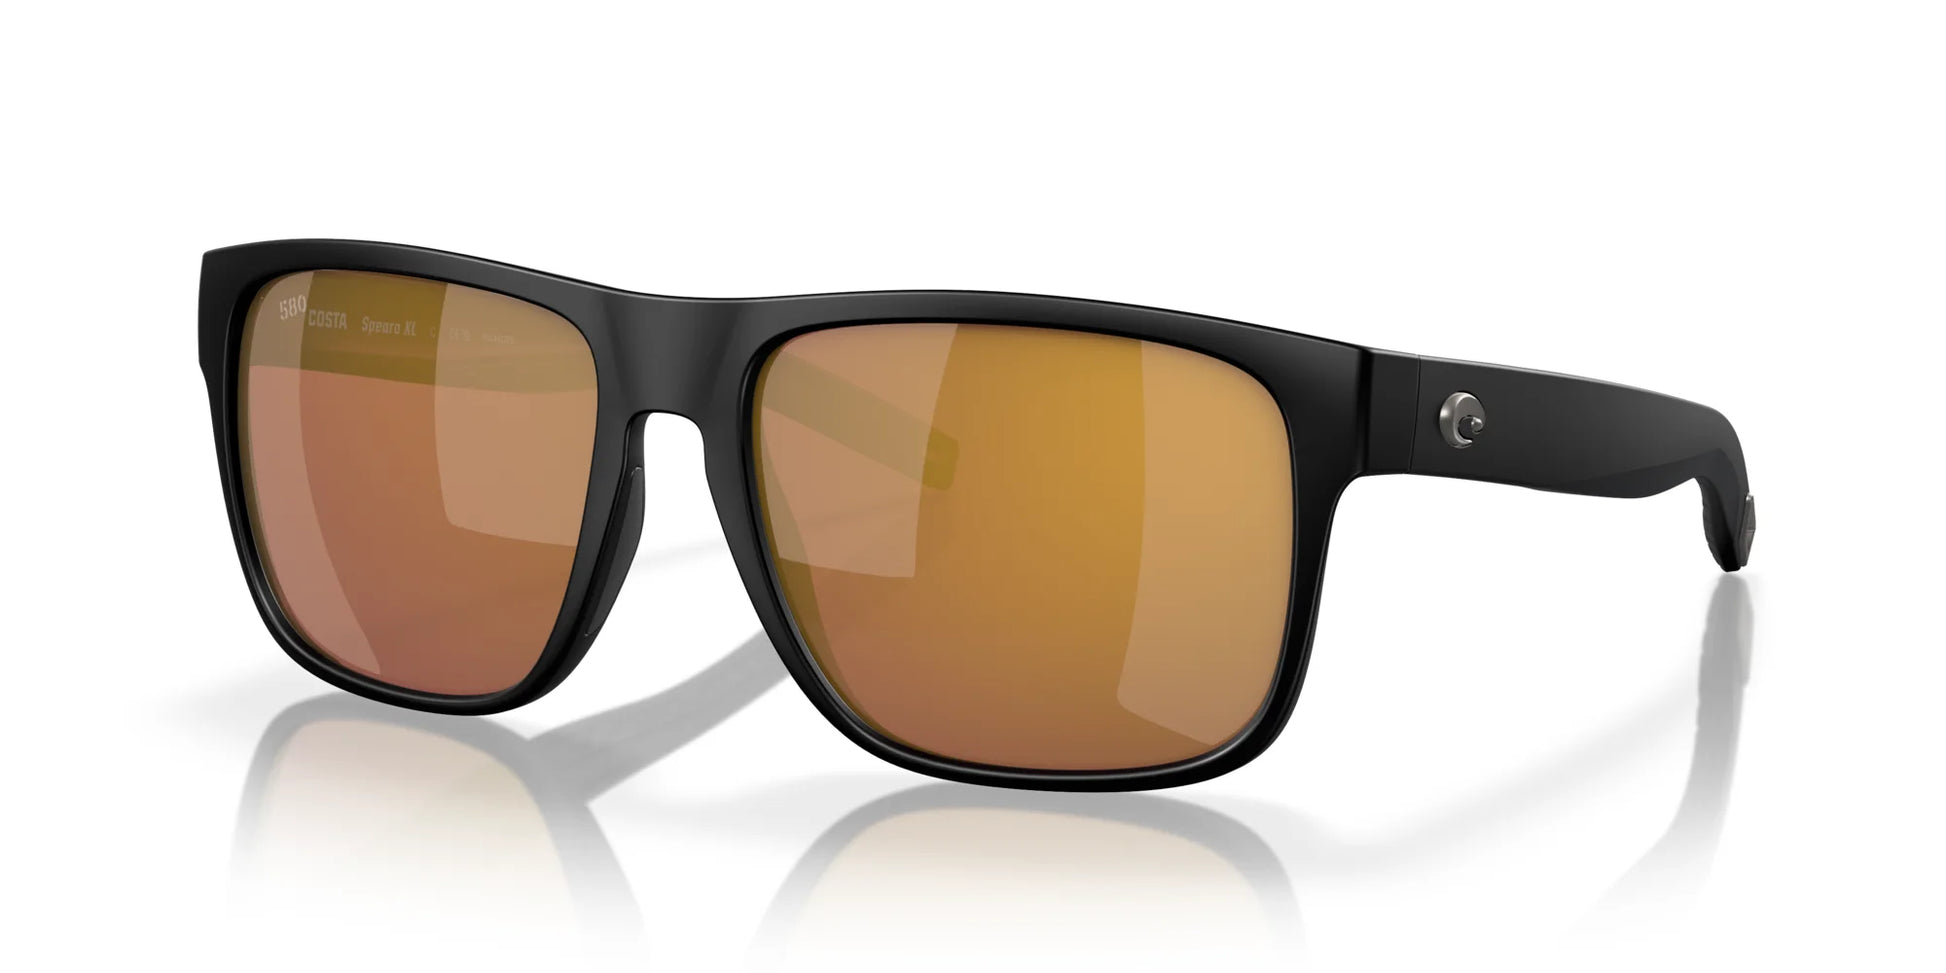 Costa SPEARO XL 6S9013 Sunglasses Matte Black / Gold Mirror